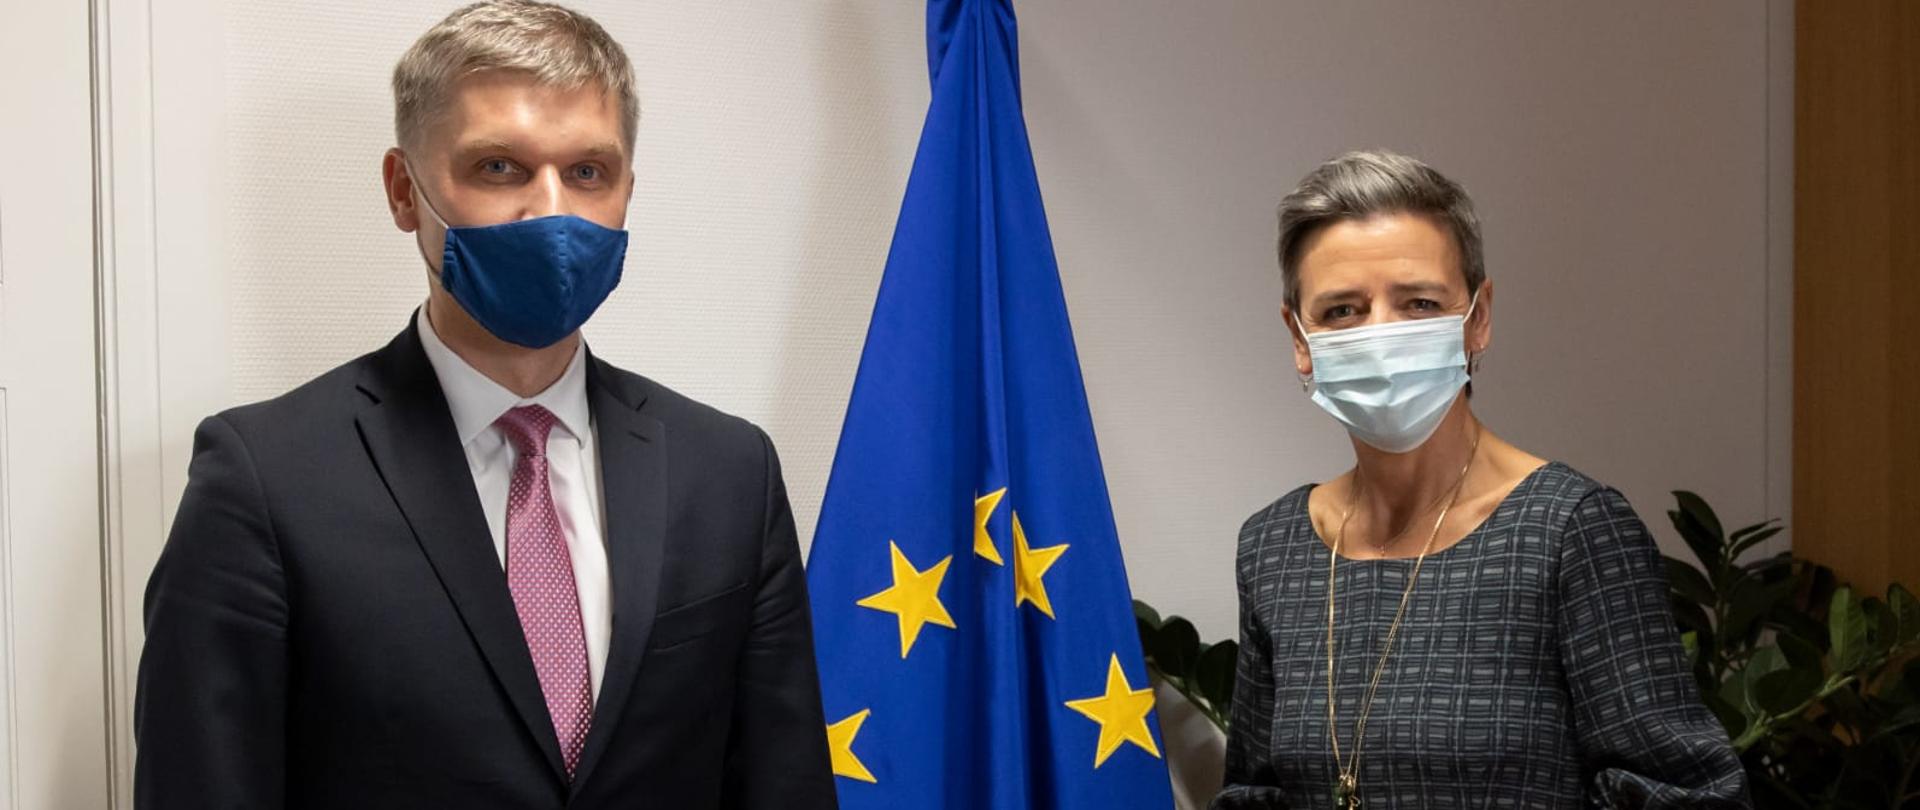 Minister rozwoju i technologii Piotr Nowak z wiceprzewodniczącą KE Margarete Vestager. Oboje w maseczkach, w tle flaga UE.